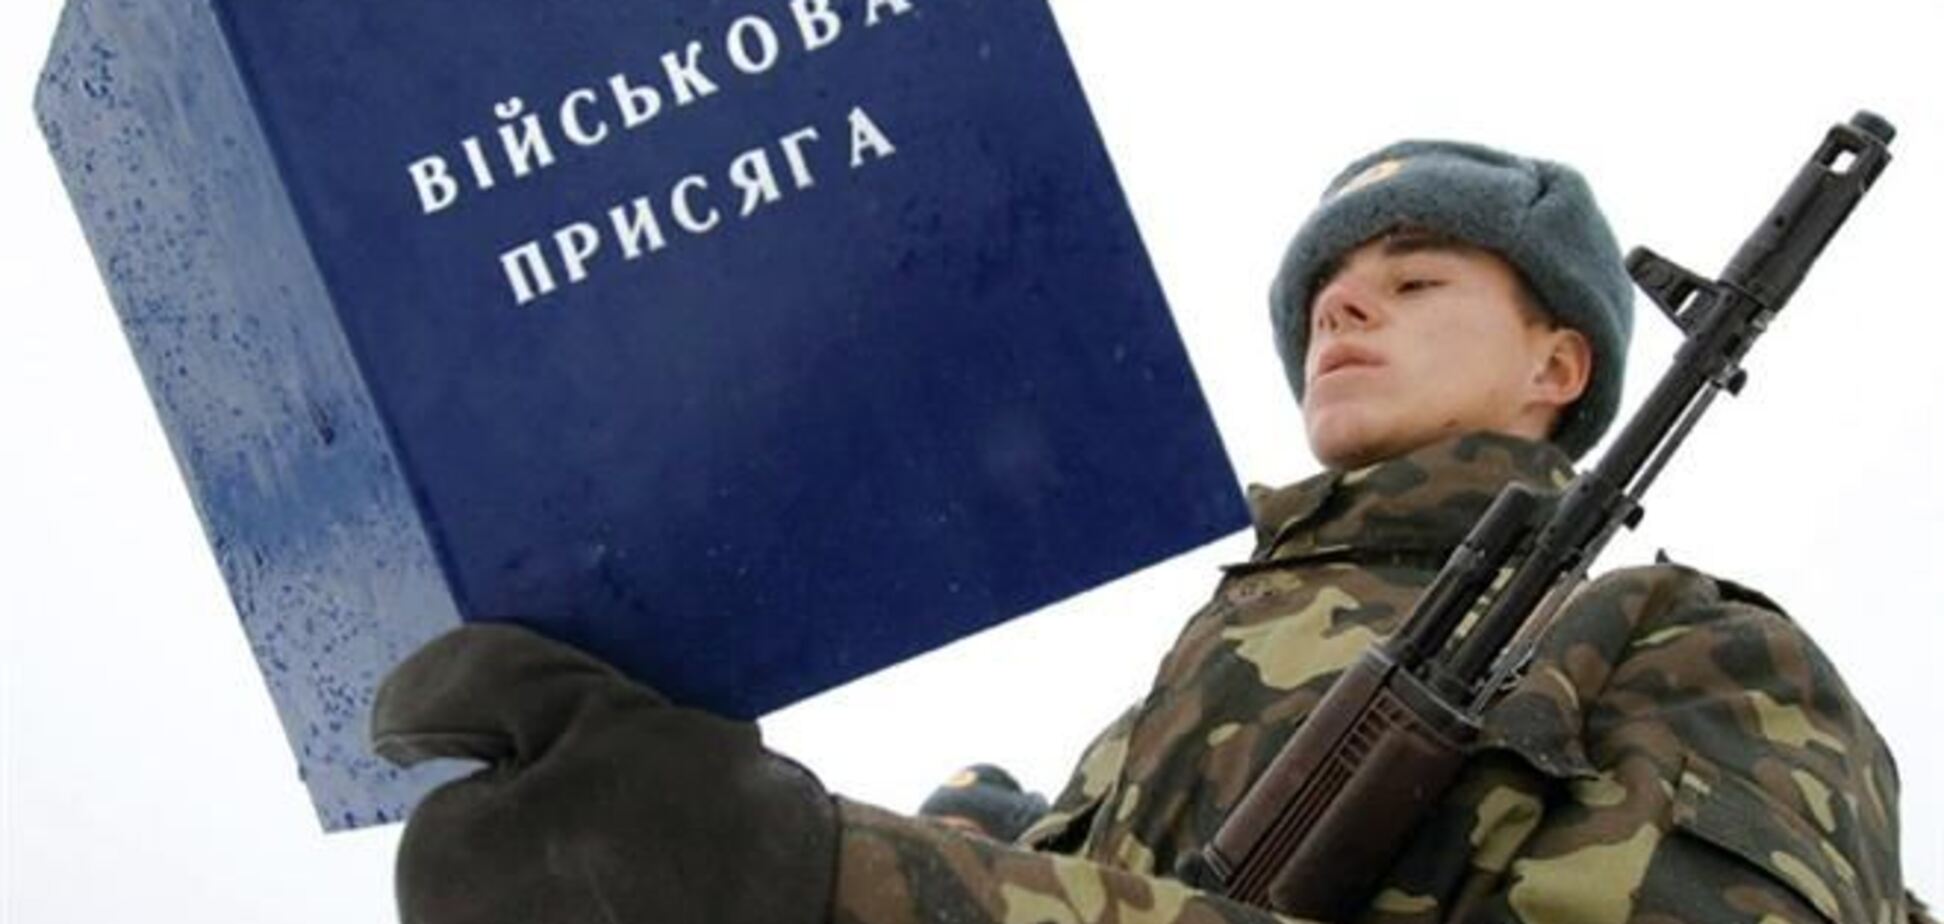 В Украине отмечают День Вооруженных Сил